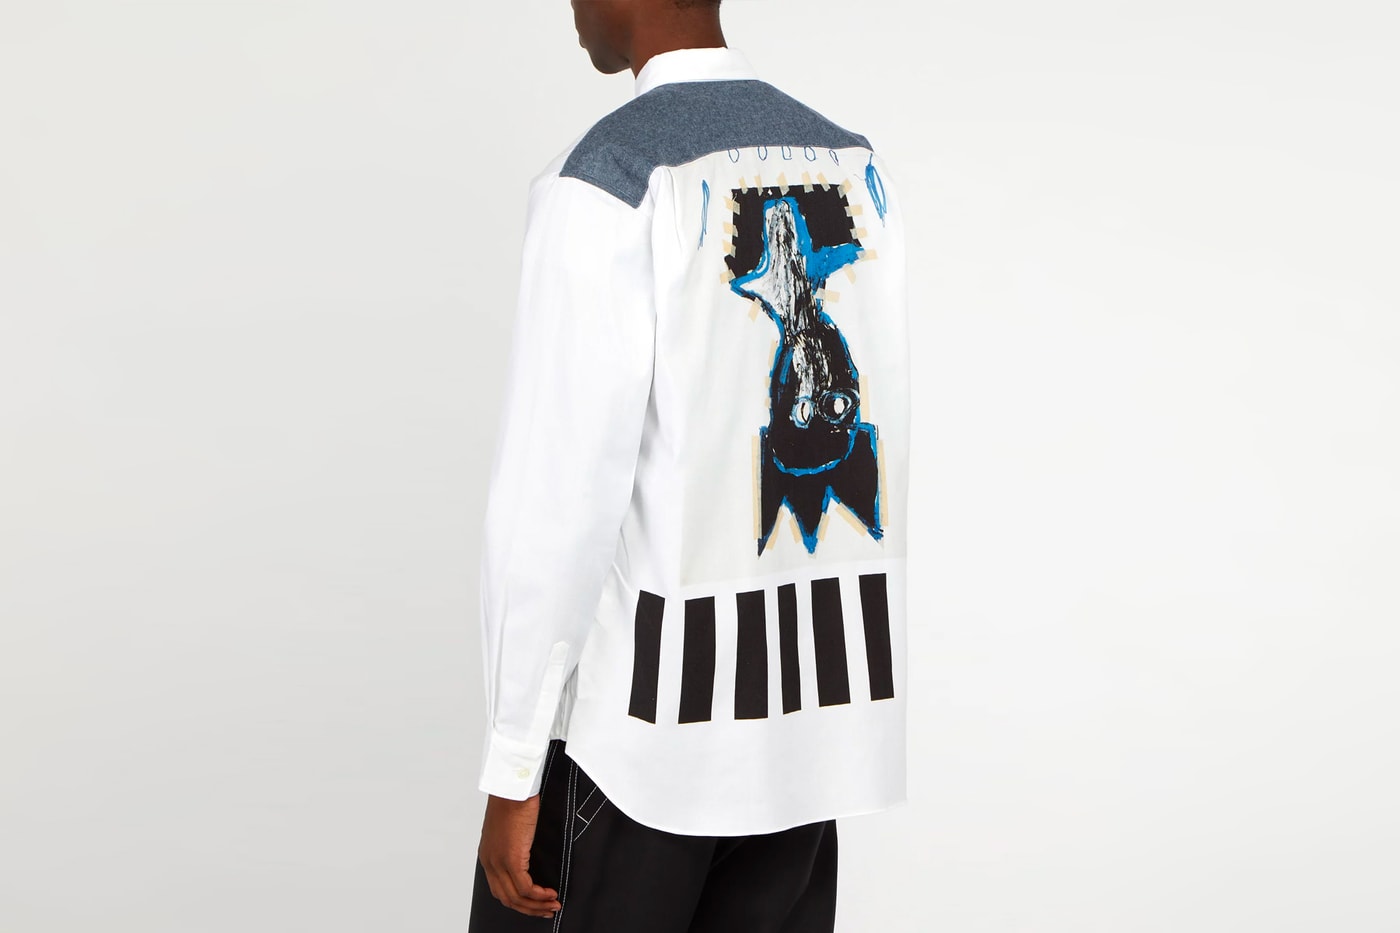 COMME des GARÇONS Shirt Jean-Michel Basquiat fall winter 2018 shirt release info